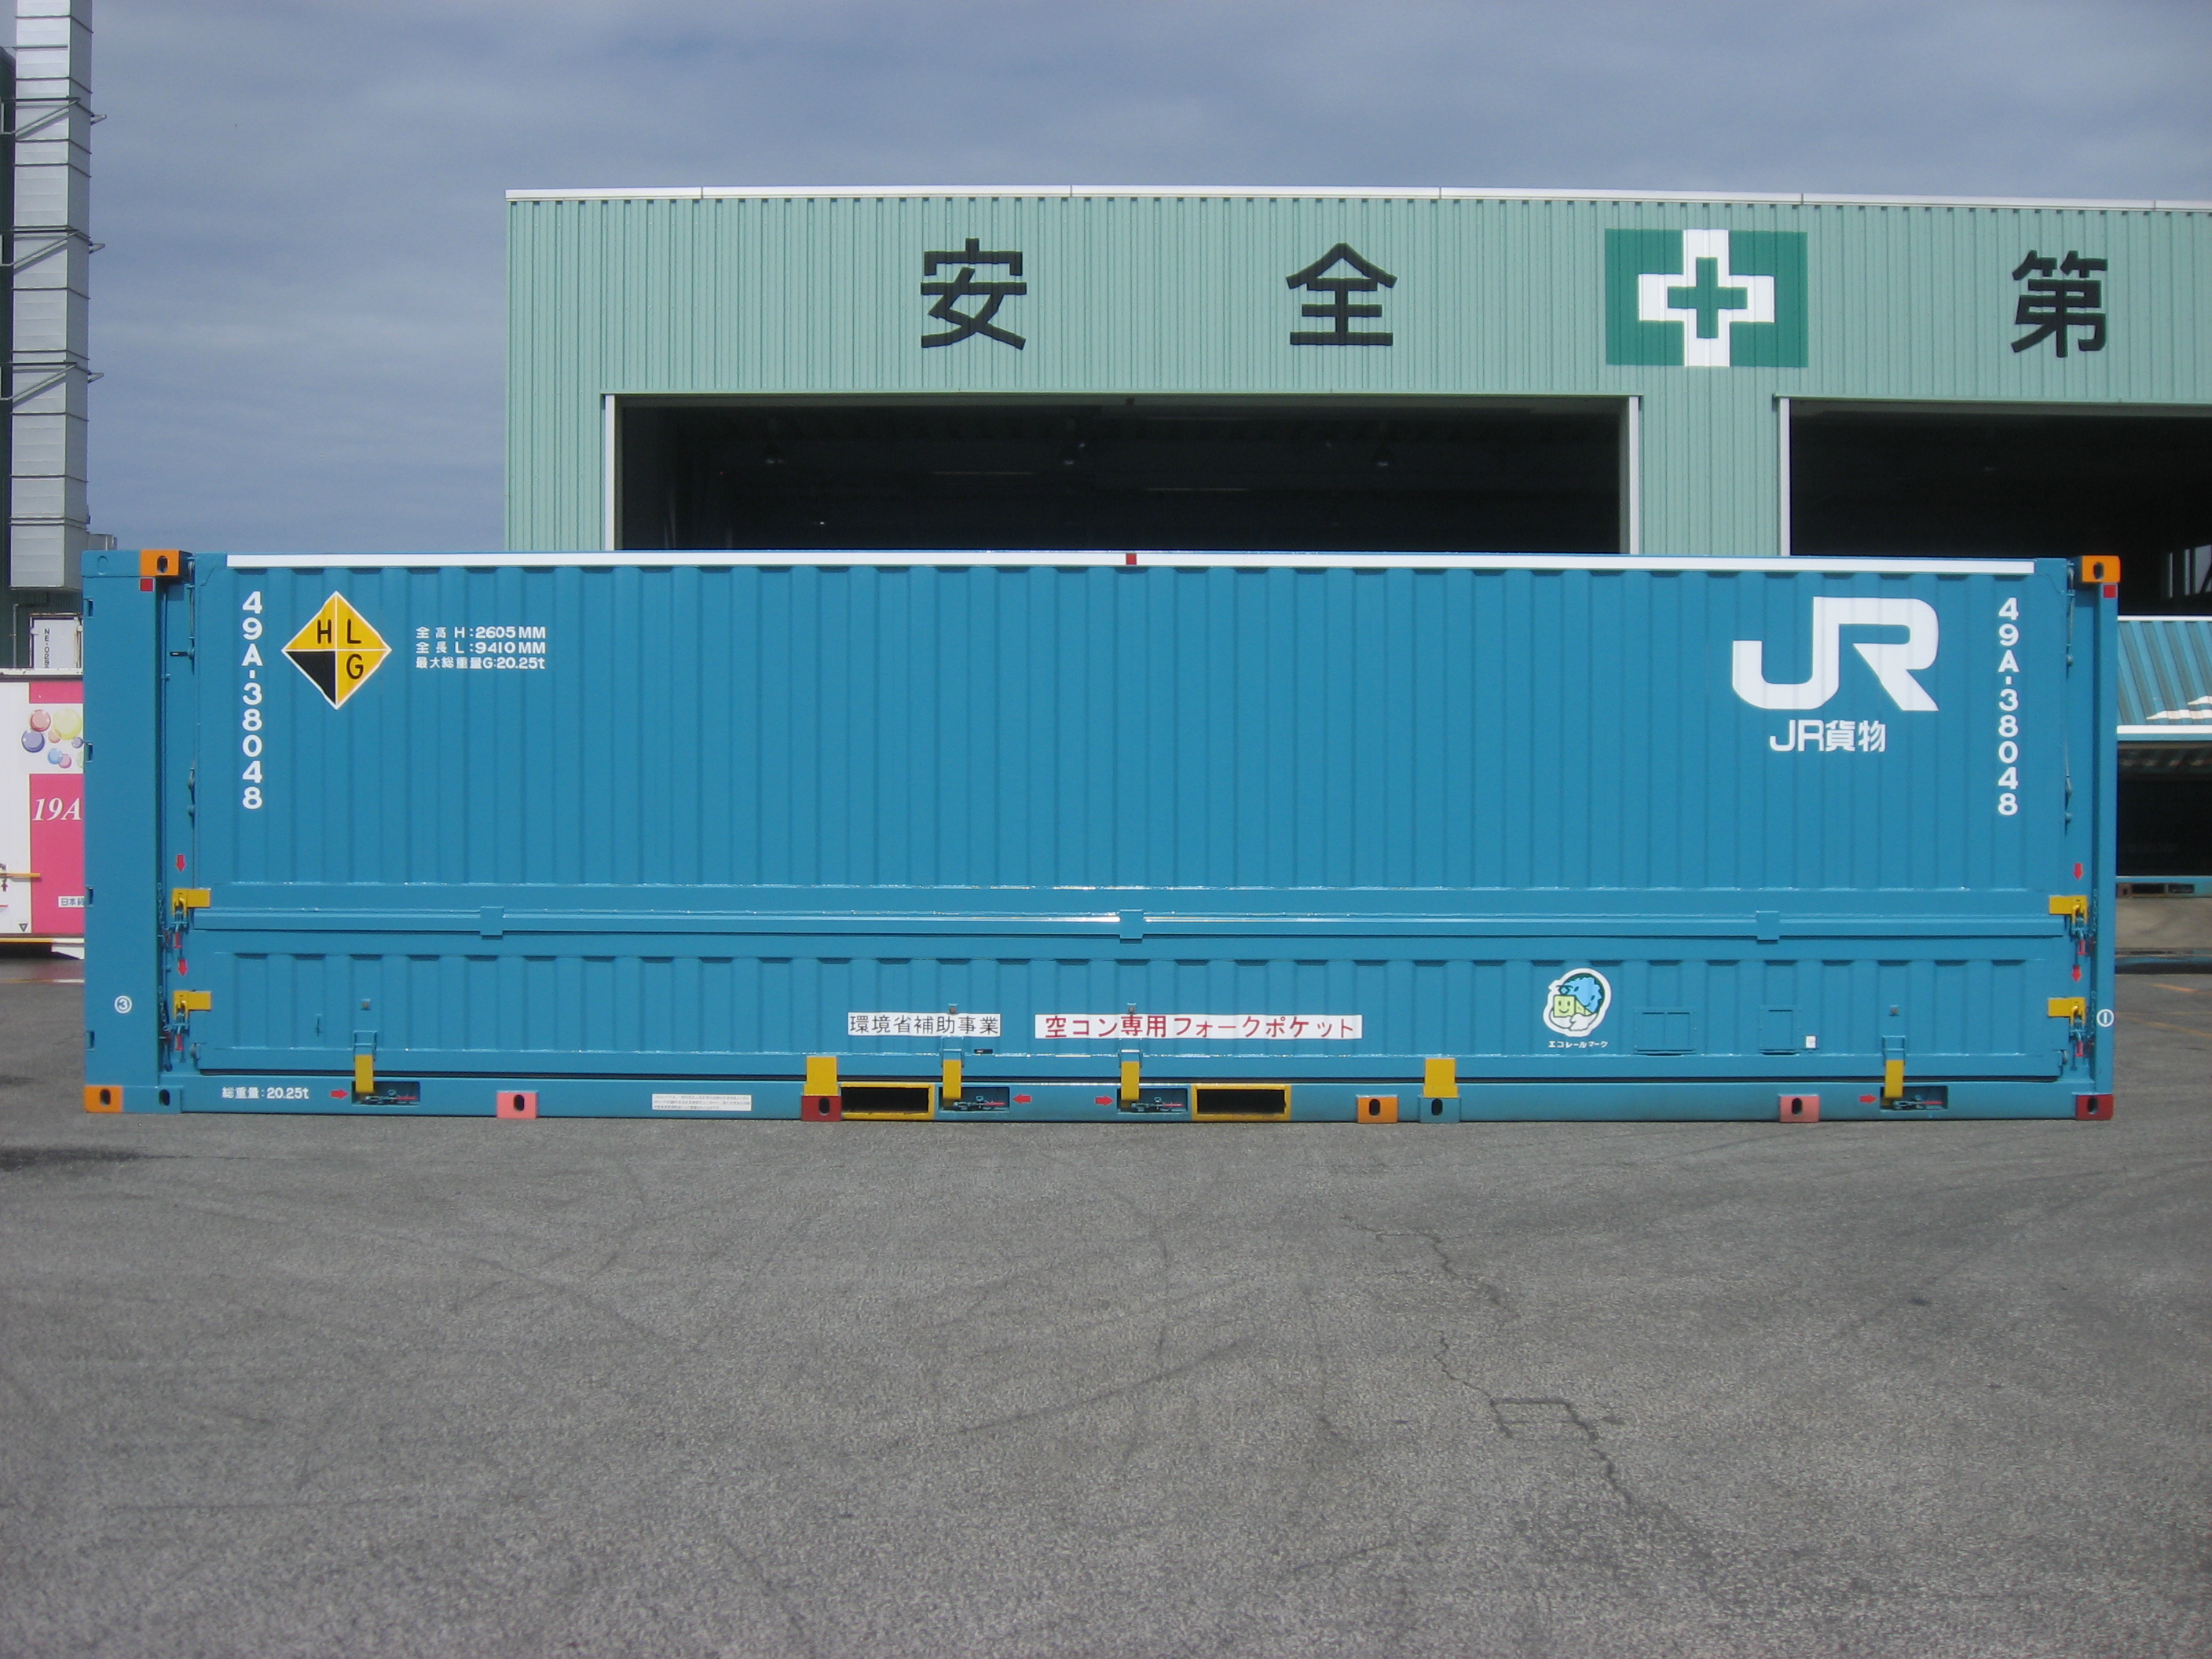 大型コンテナ輸送(31フィート) | JR貨物 日本貨物鉄道株式会社